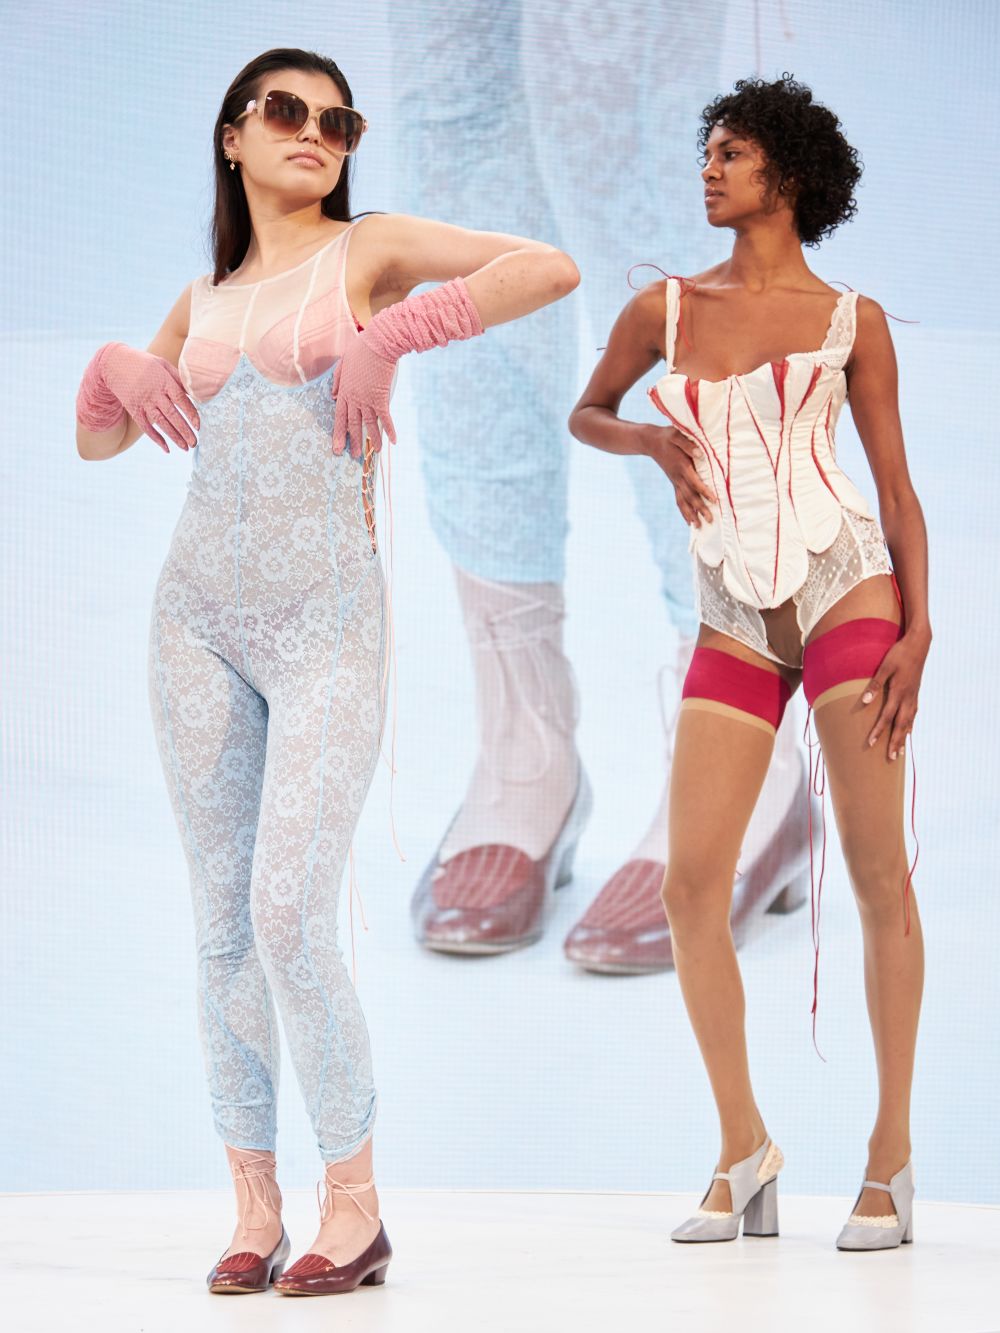 Models on rotating platform wearing lingerie